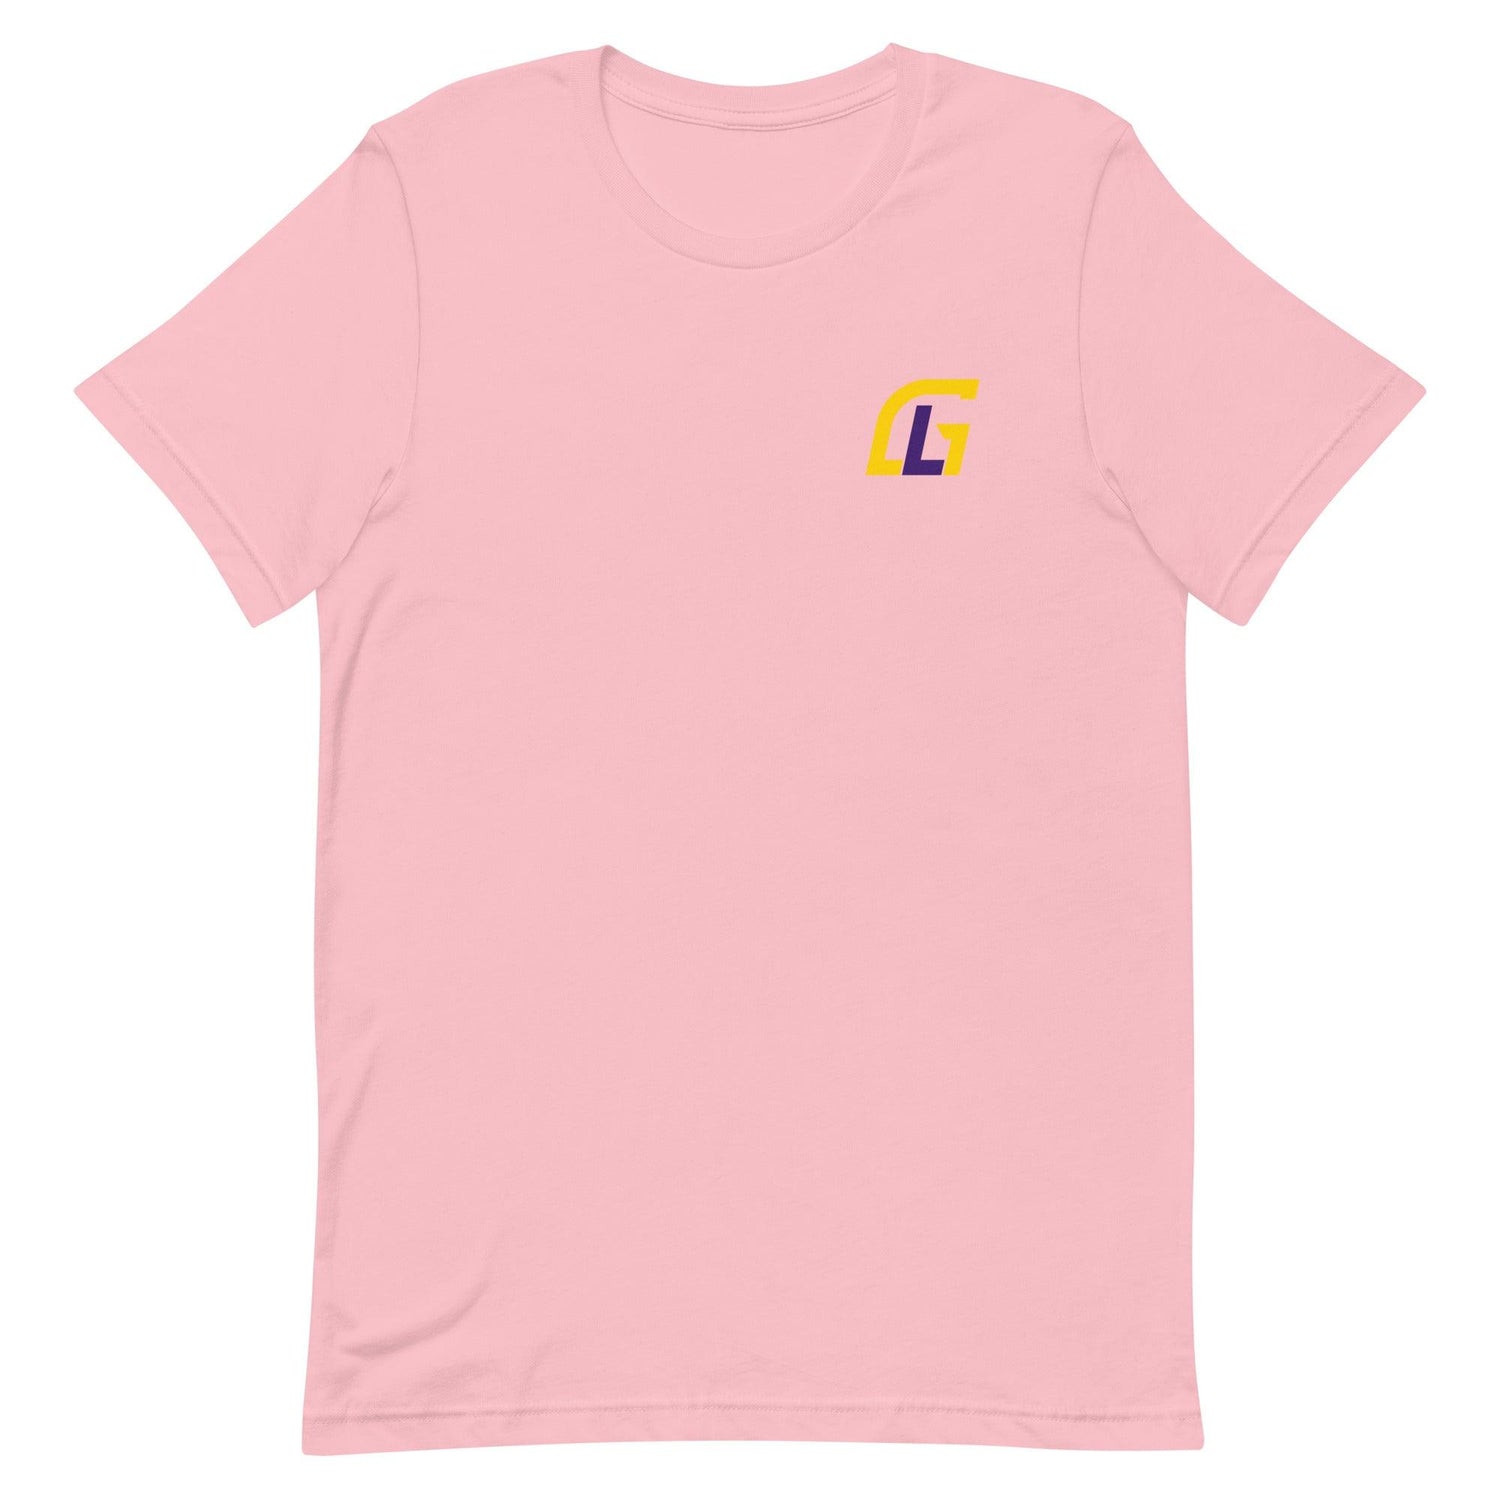 Glen Logan "Essential" t-shirt - Fan Arch